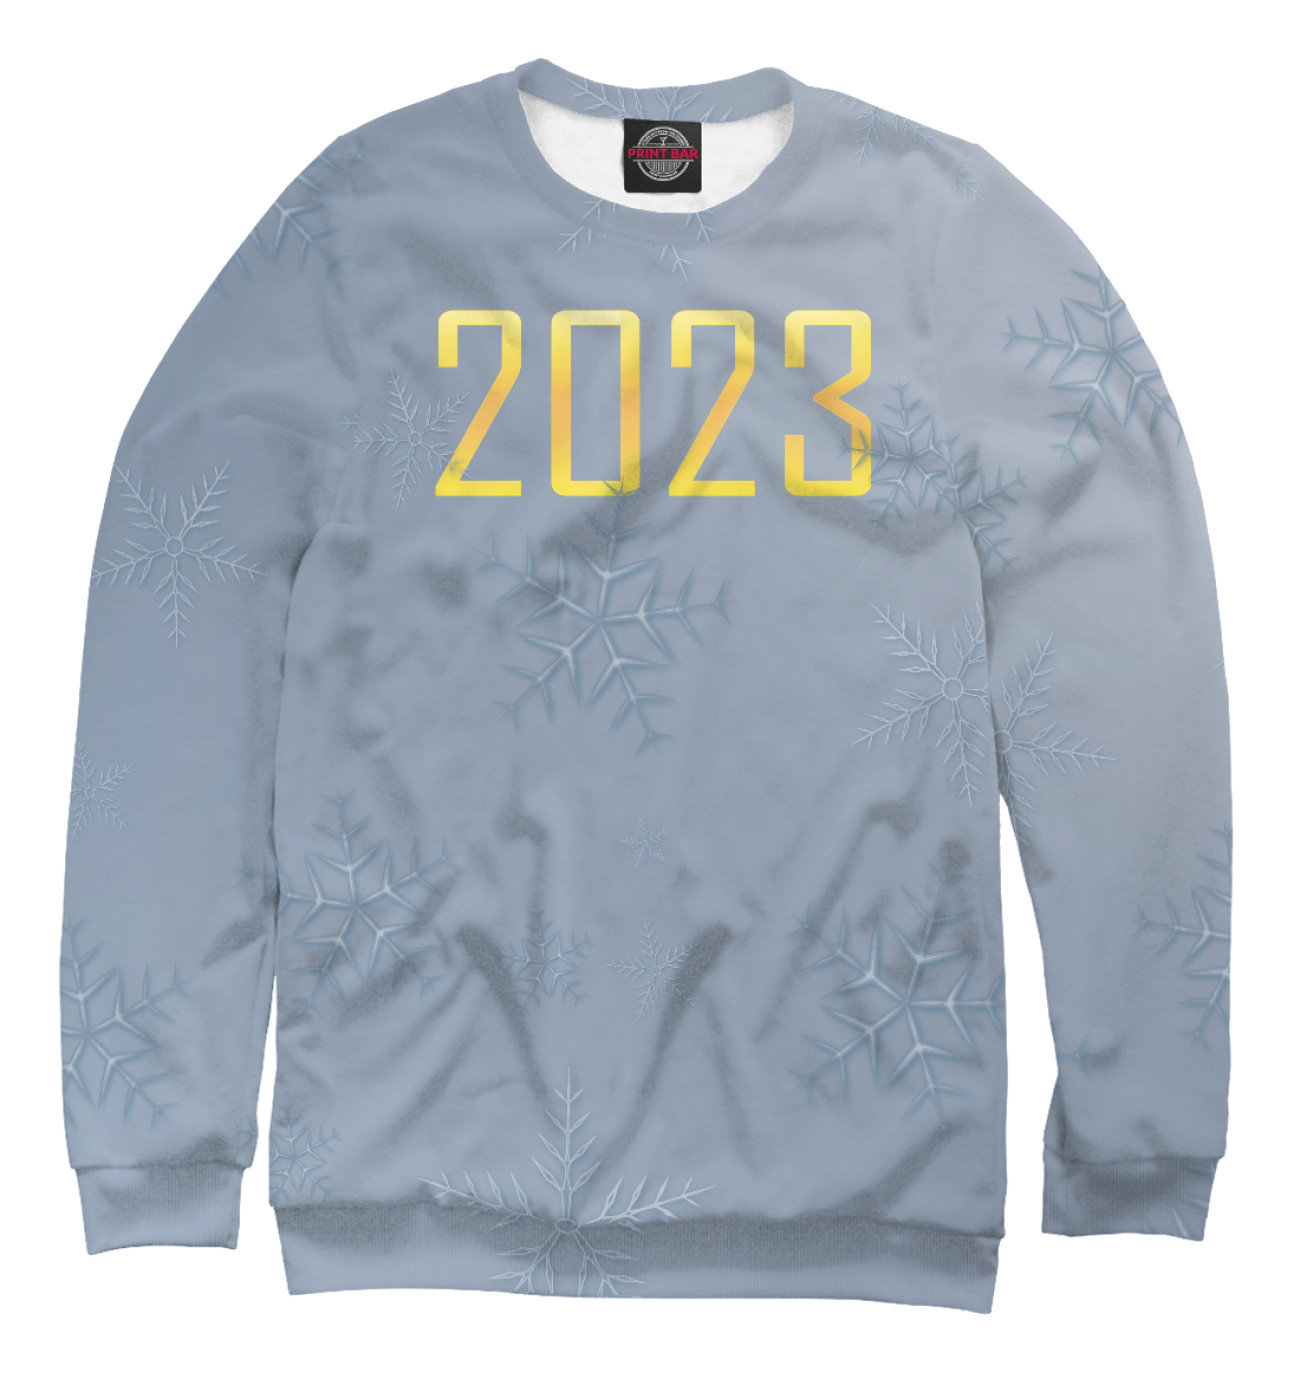 Мужской Свитшот Новый 2023 год со снежинками, артикул: NG3-487412-swi-2